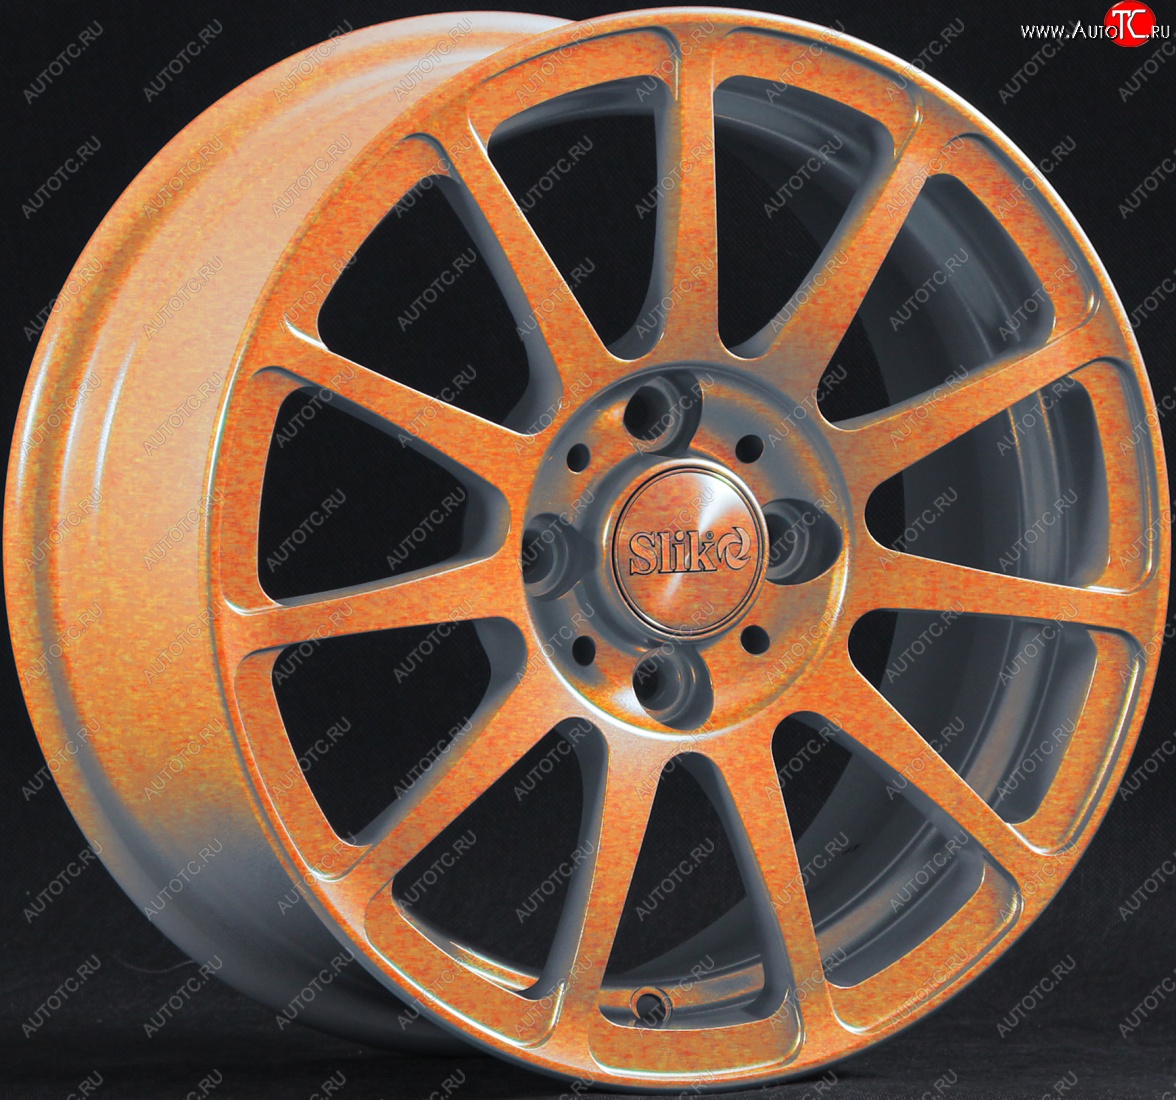 12 849 р. Кованый диск Slik Classik 5.5*14 (Cendy - медно-оранжевый глянцевый) Nissan Latio N17 седан правый руль дорестайлинг (2012-2014) 4x100.0xDIA60.0xET40.0 (Цвет: Cendy - медно-оранжевый глянцевый)